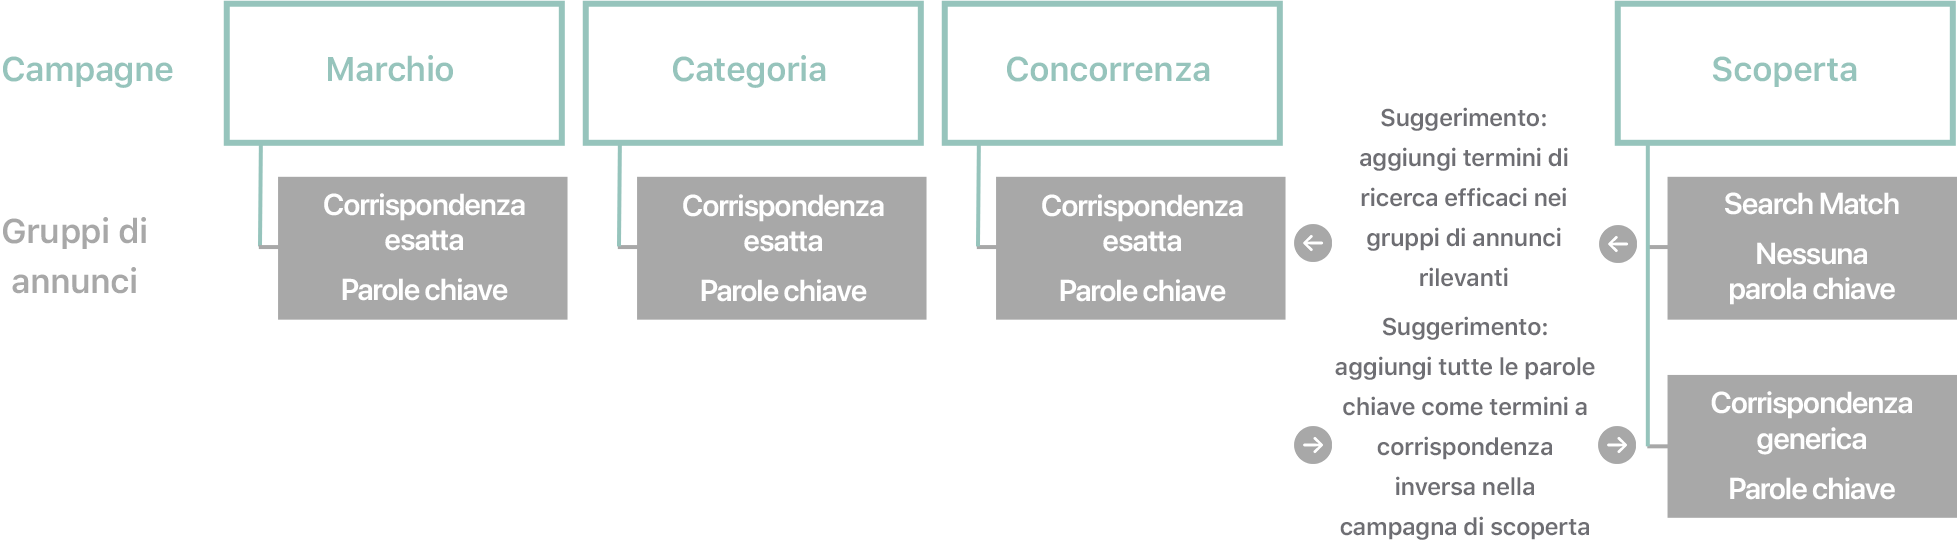 Diagramma dei tipi di campagne e dei gruppi di annunci associati, con i suggerimenti per le parole chiave. 